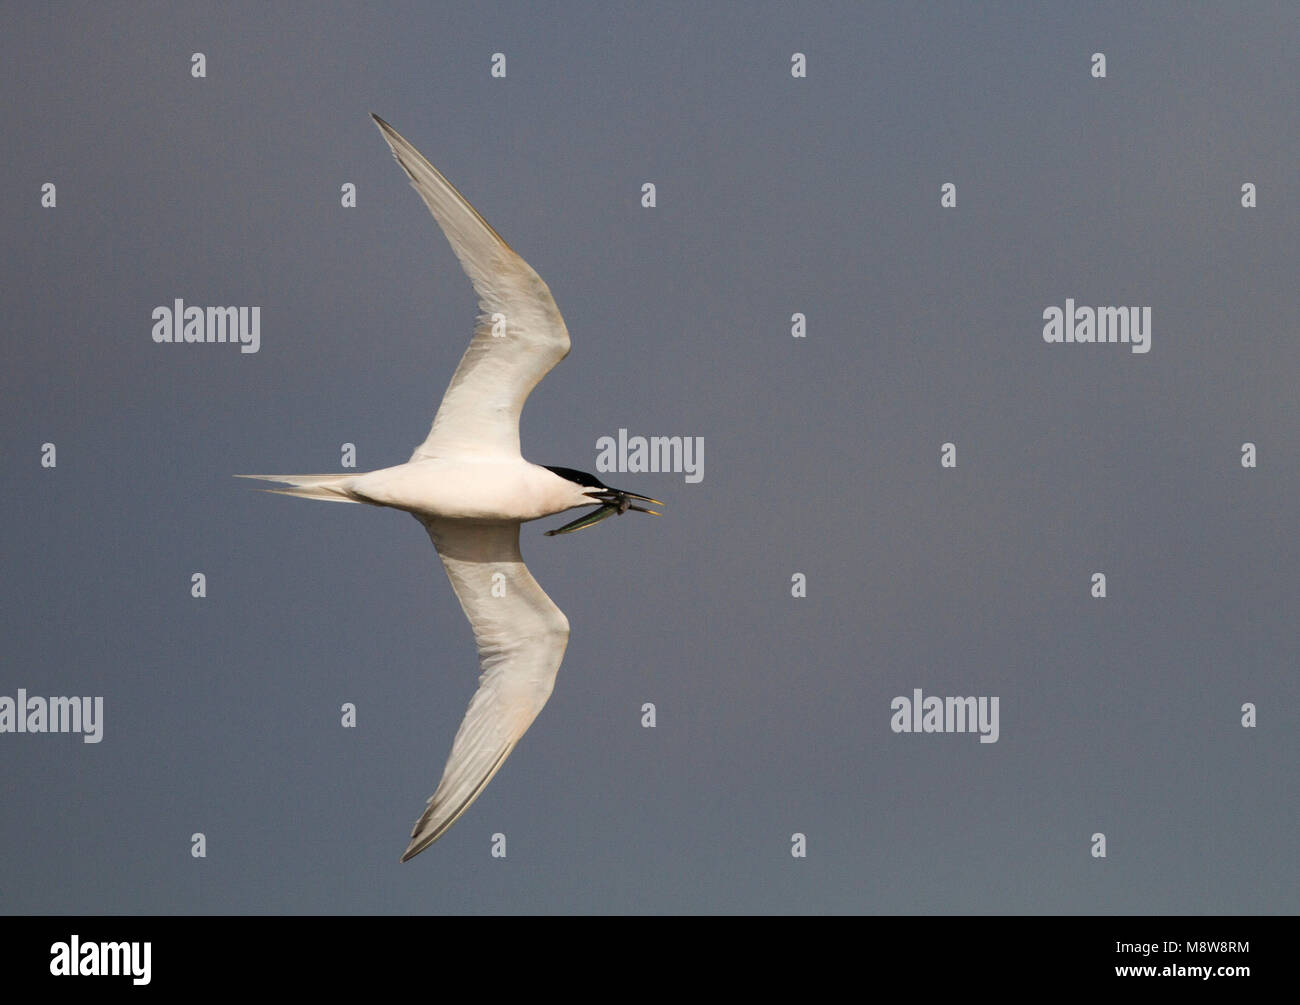 Grote stern volwassen vliegend met prooi in bek; Sandwich Tern adult flying with prey in its beak Stock Photo